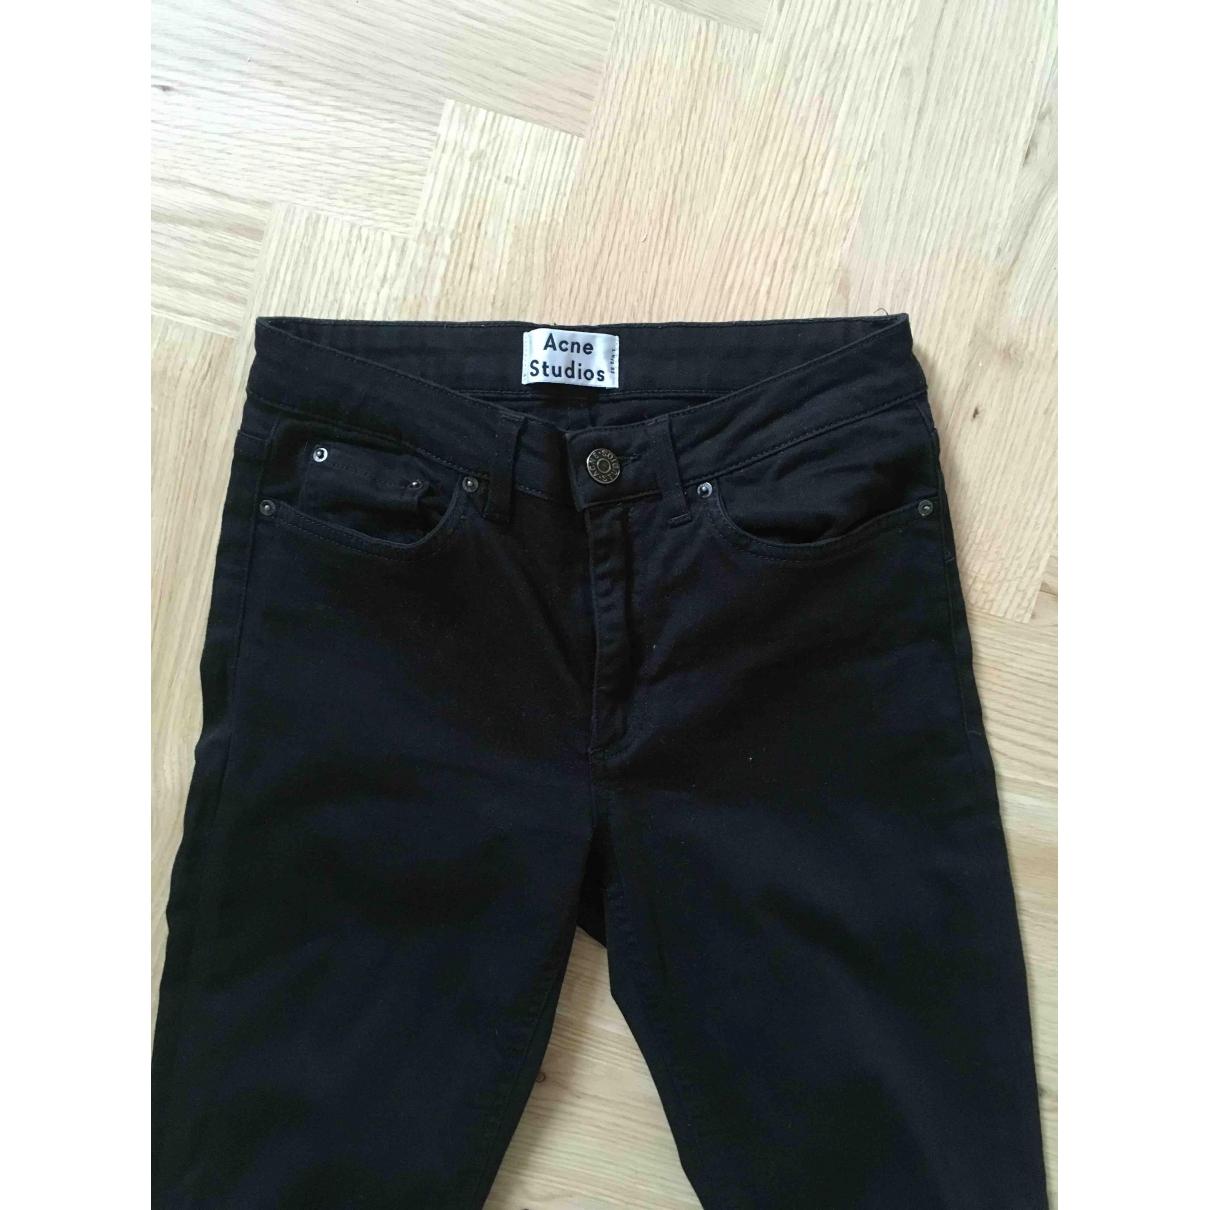 Acne Studios Denim Skin 5 Slim Jeans in Black - Lyst